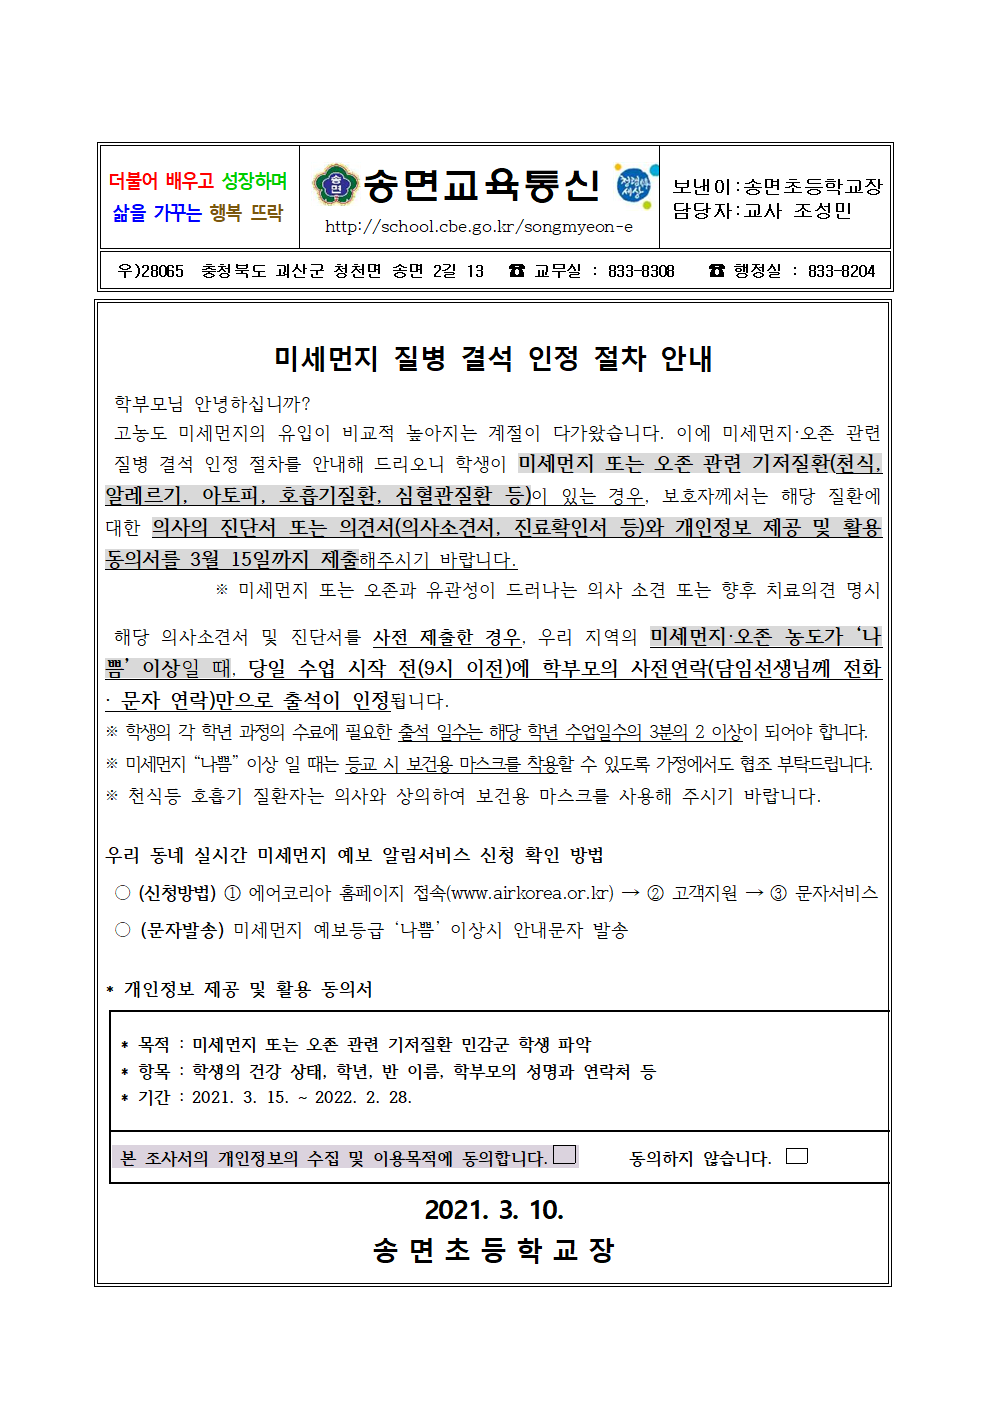 미세먼지 질병결석 인정 절차 안내 가정통신문001